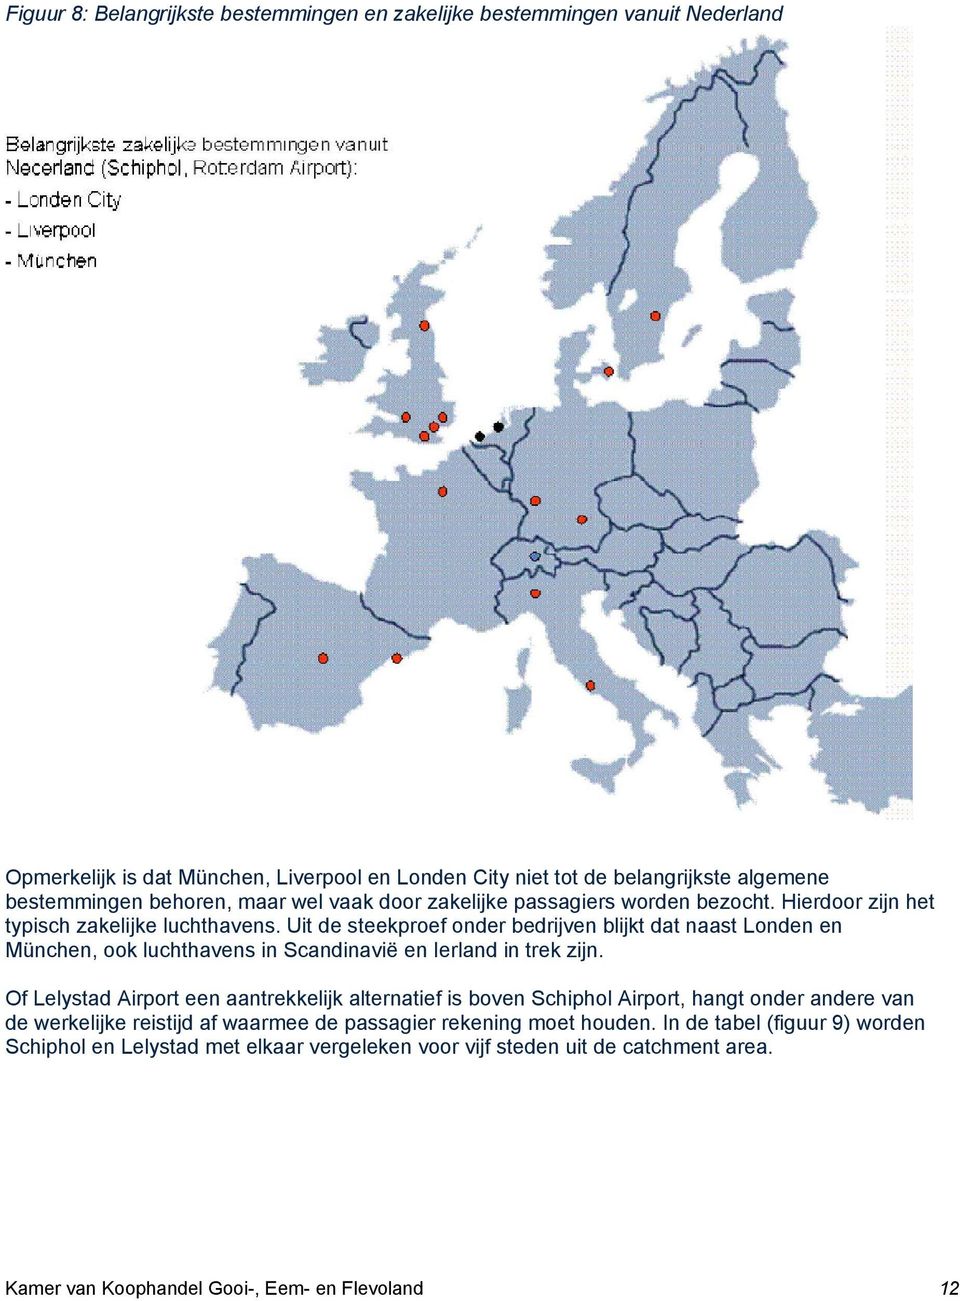 Uit de steekproef onder bedrijven blijkt dat naast Londen en München, ook luchthavens in Scandinavië en Ierland in trek zijn.